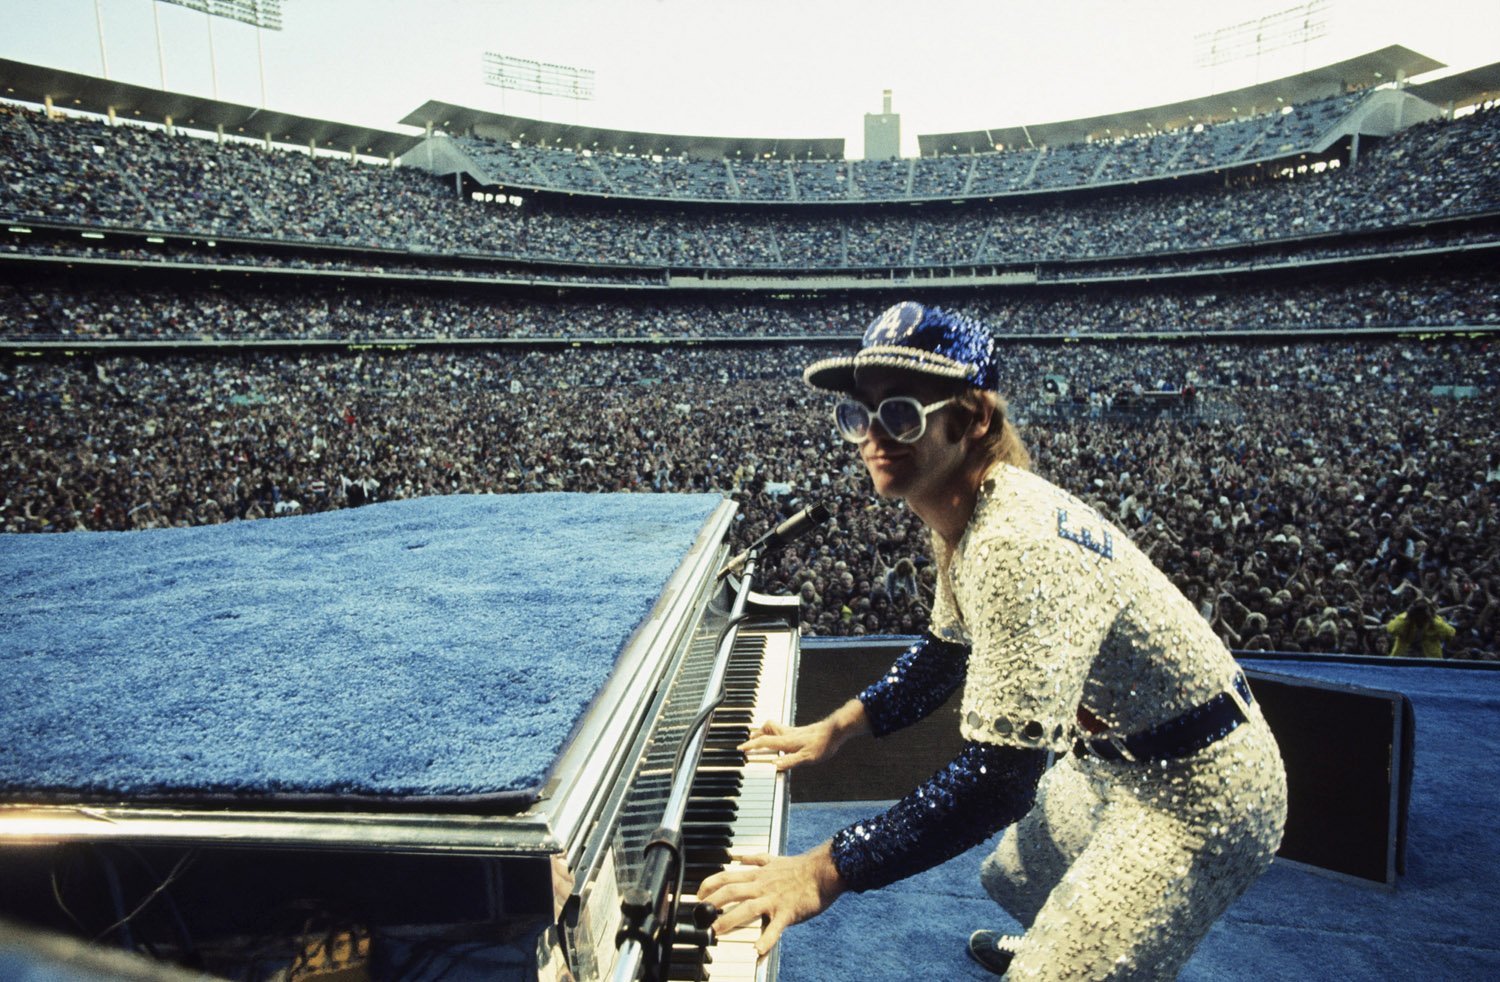 Happy Birthday to Elton John, who turns 70 today! 